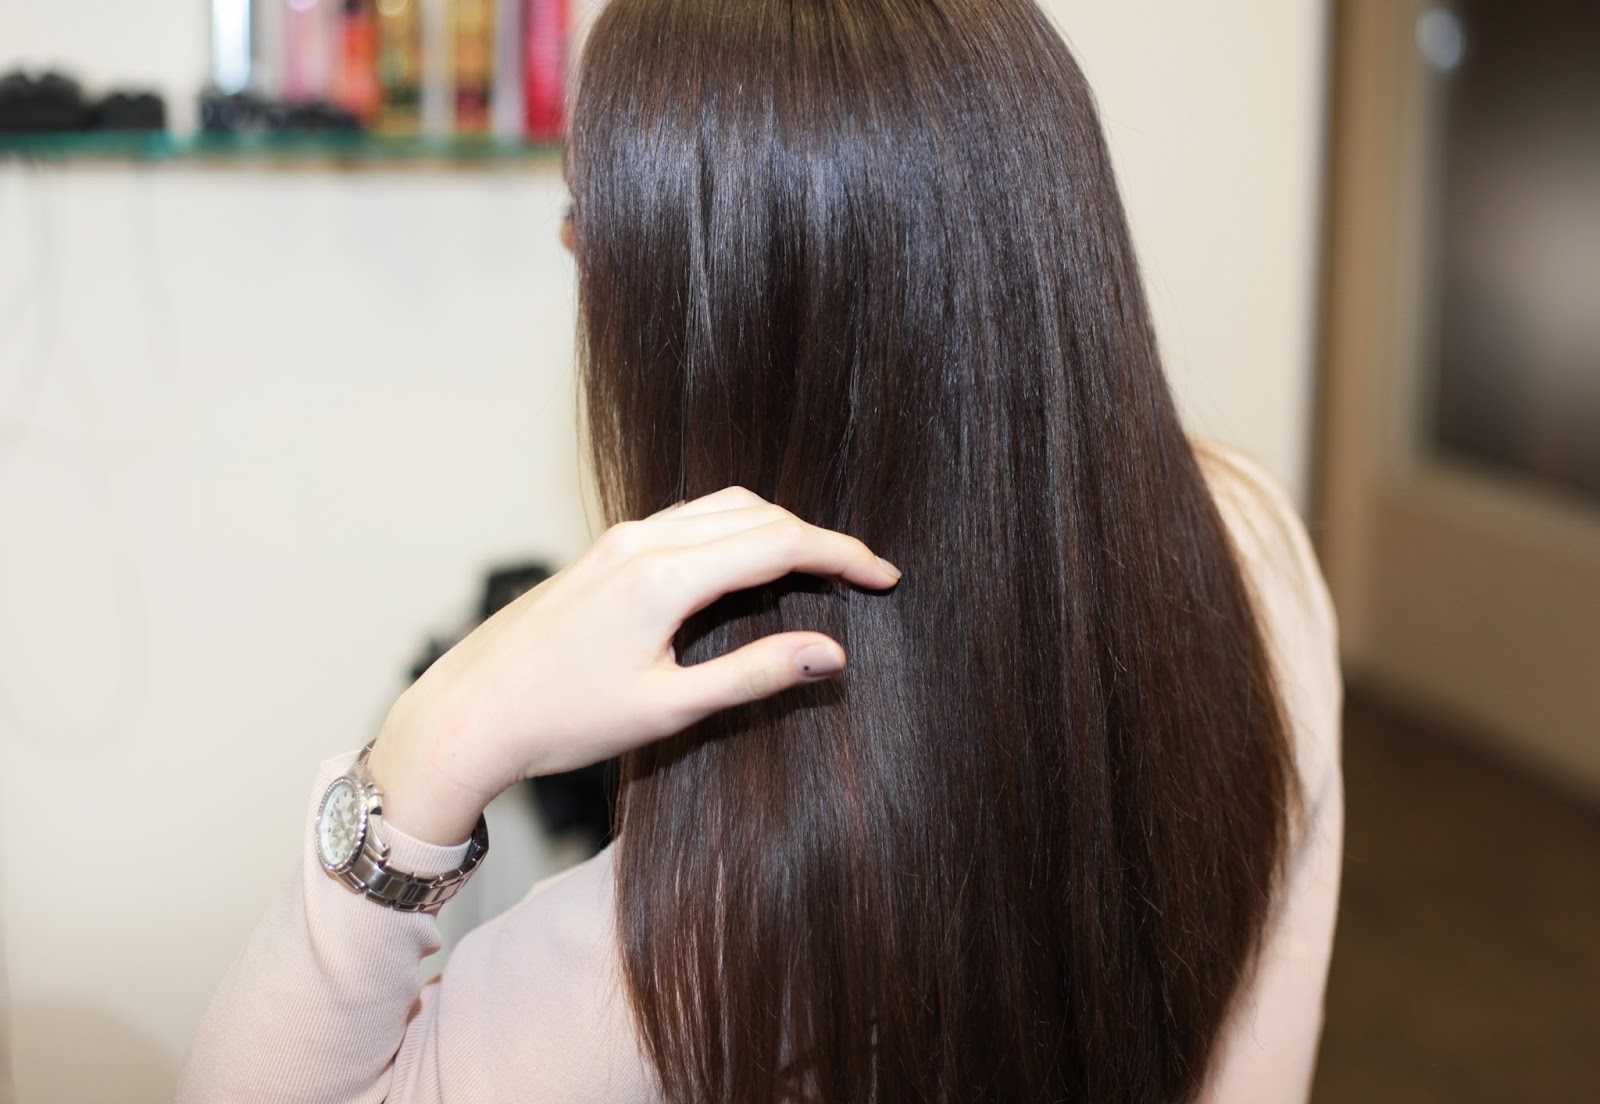 Биоламинирование волос. что это такое, фото, средства, как делается, цена и результаты, отзывы